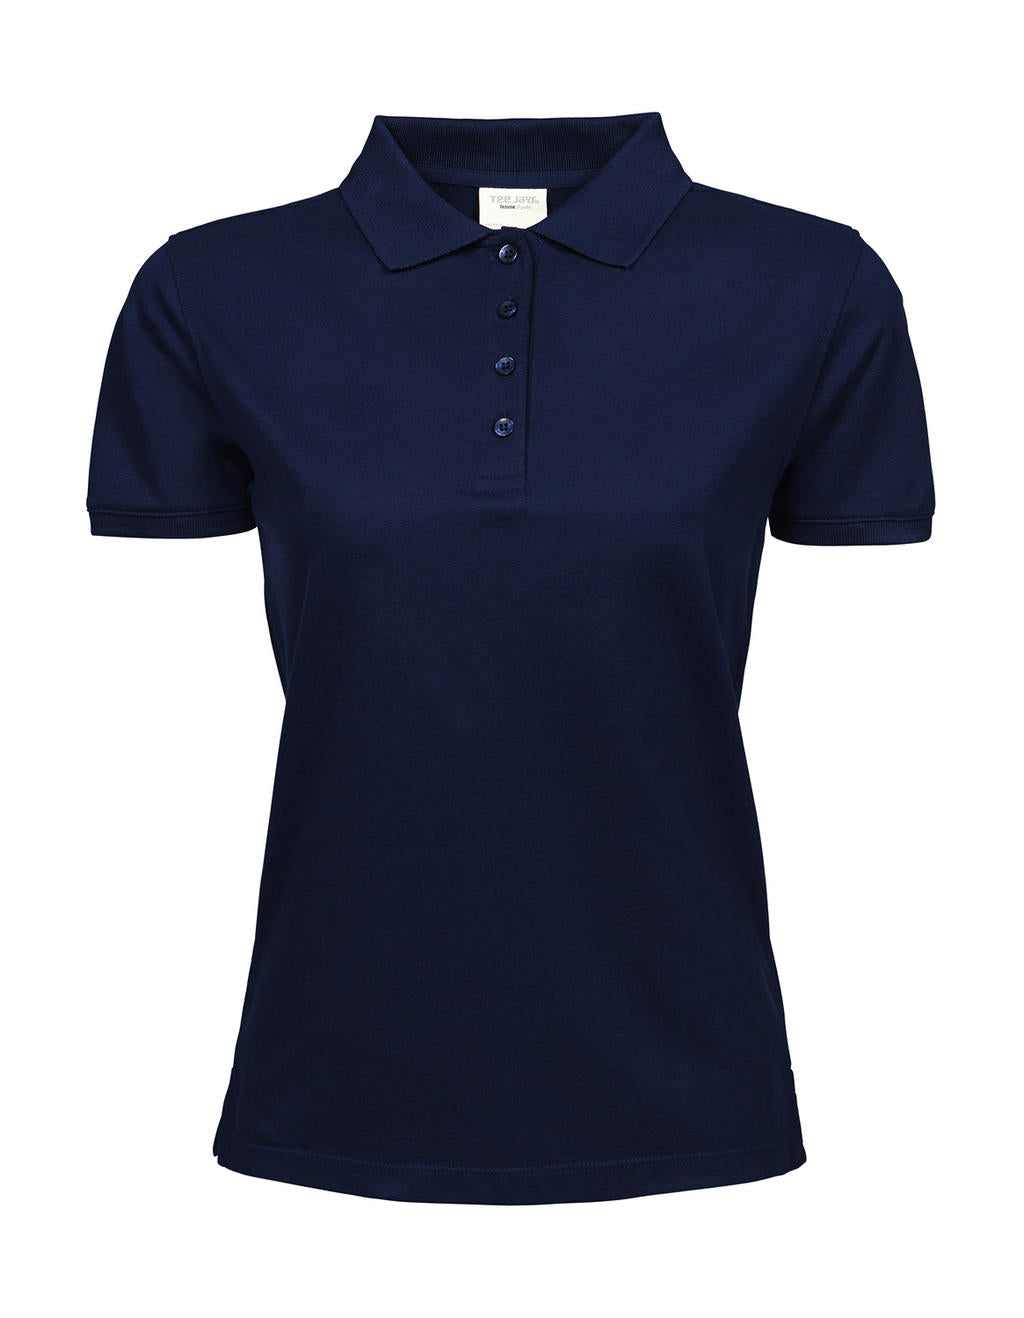 Tee Jays Damen Polo Shirt Kragen Basic Poloshirt T-Shirt T Shirt